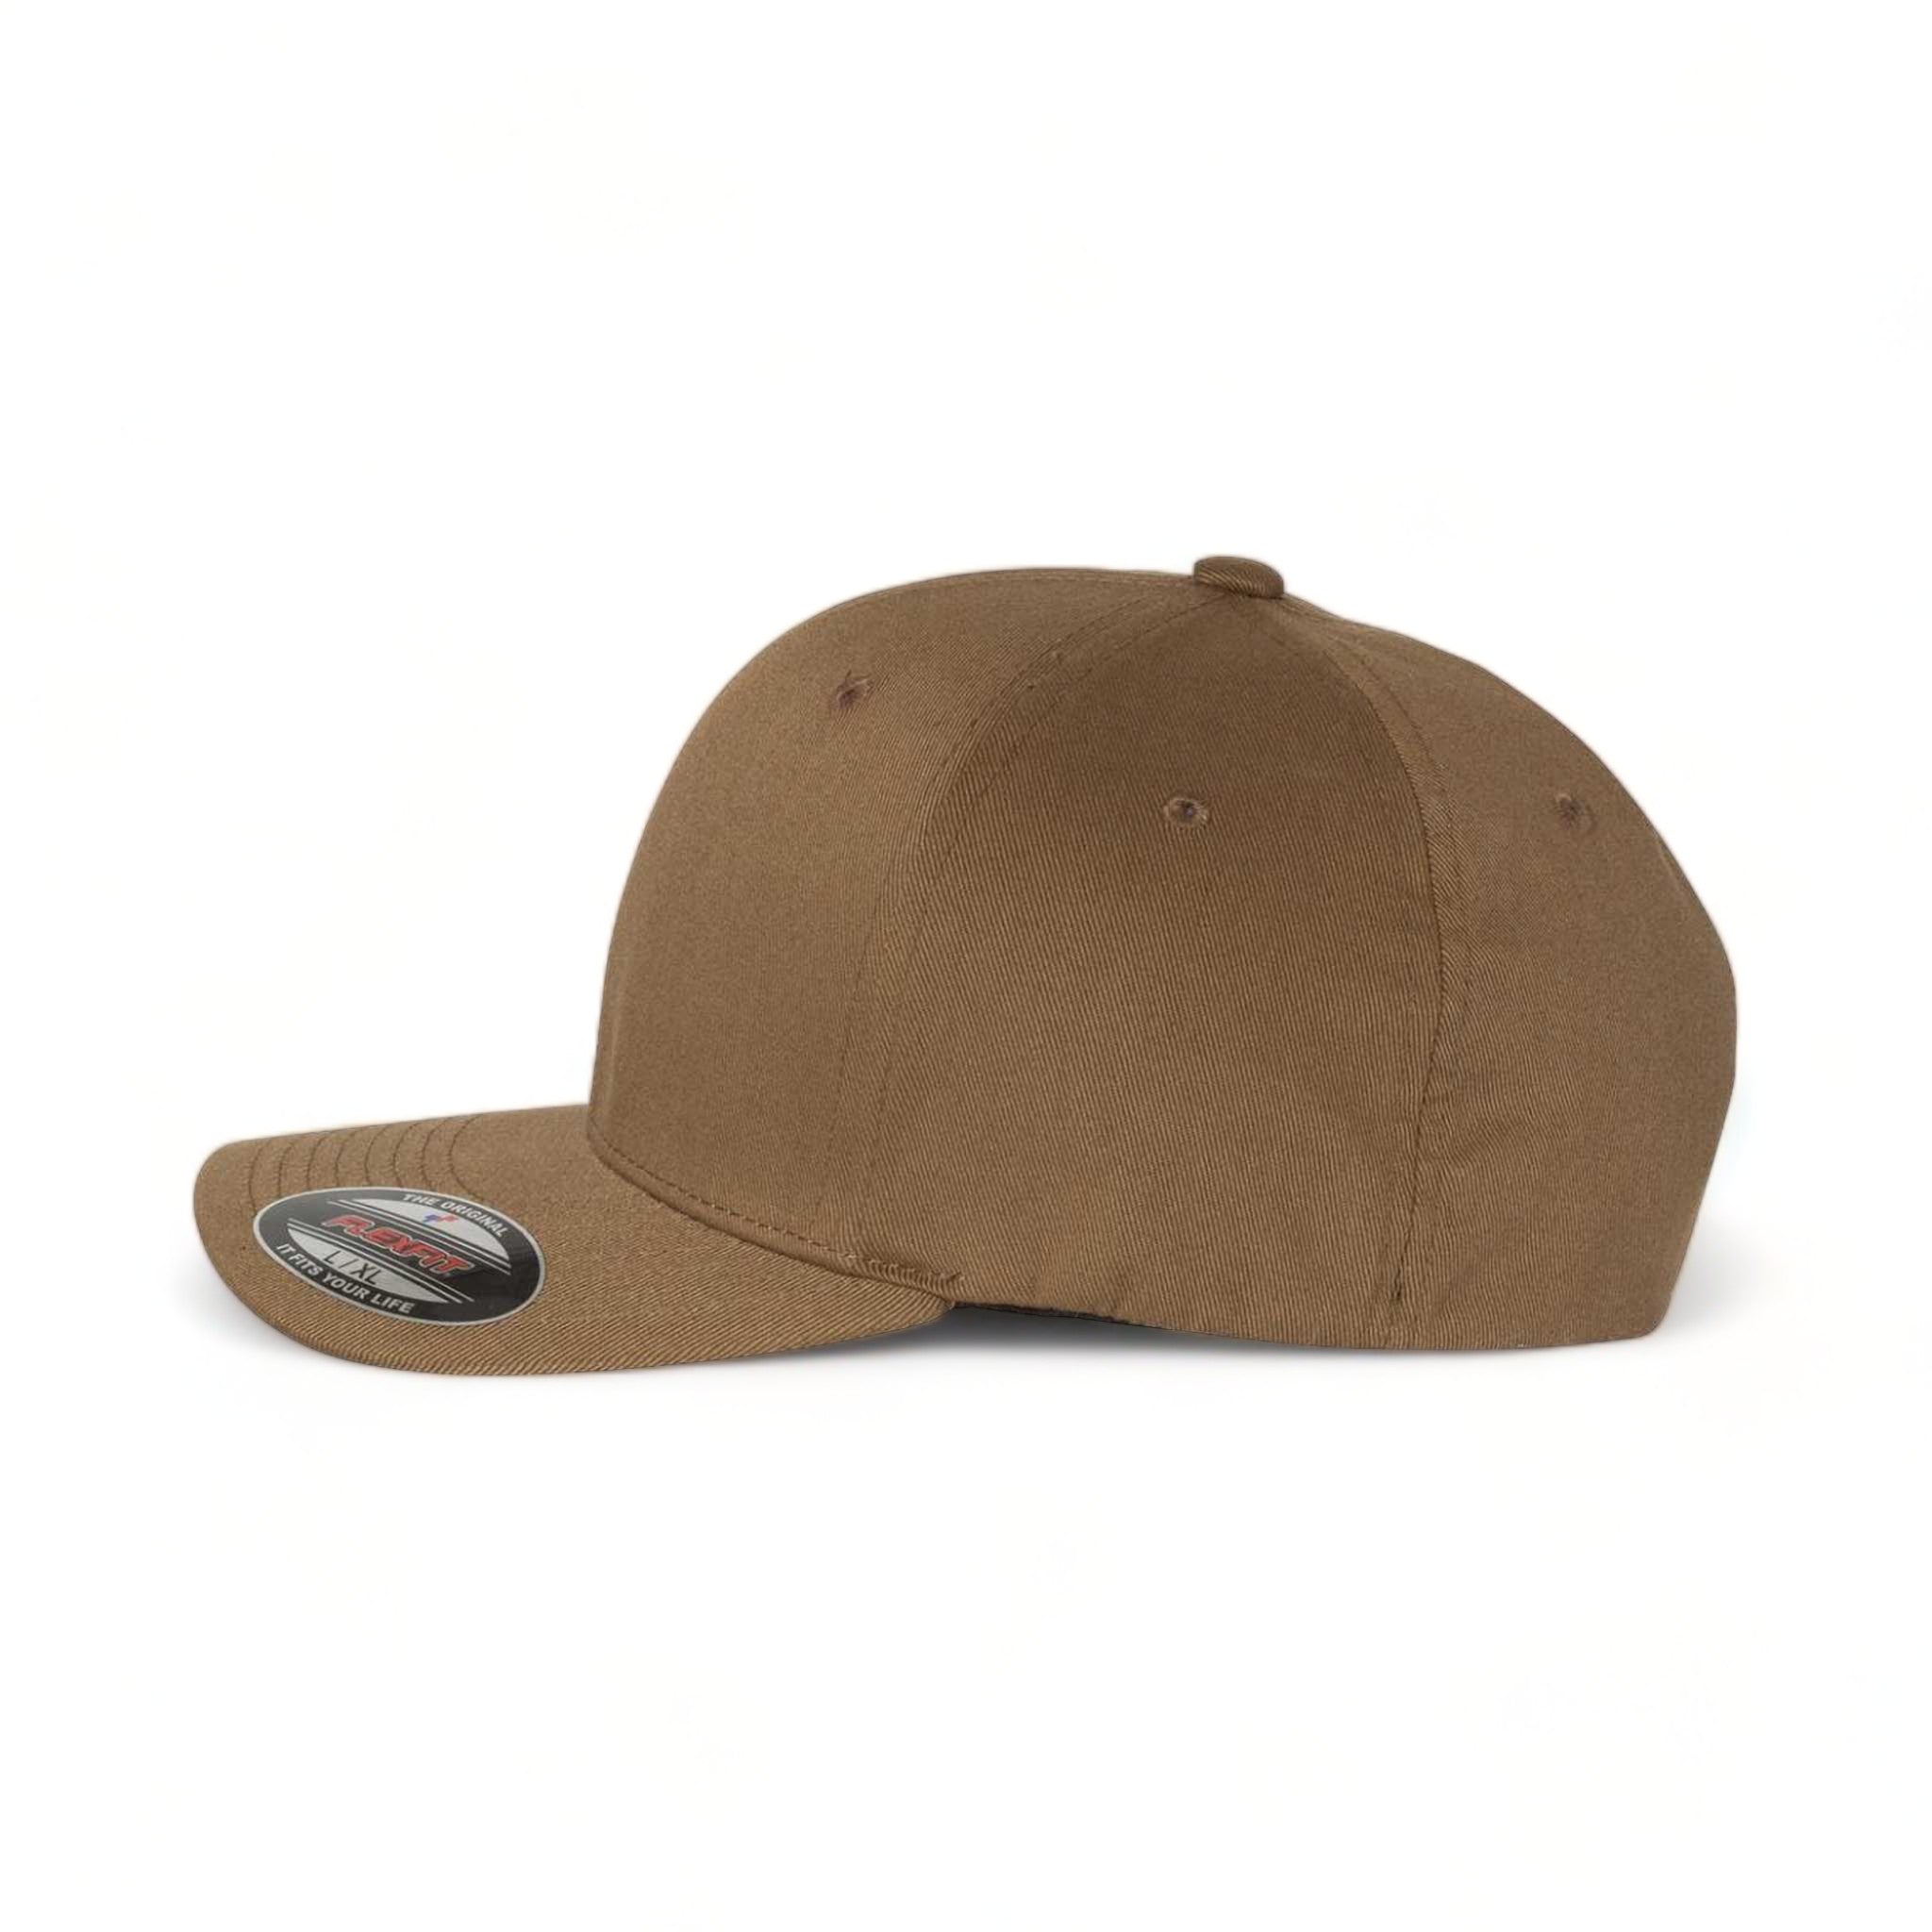 Side view of Flexfit 6277 custom hat in coyote brown